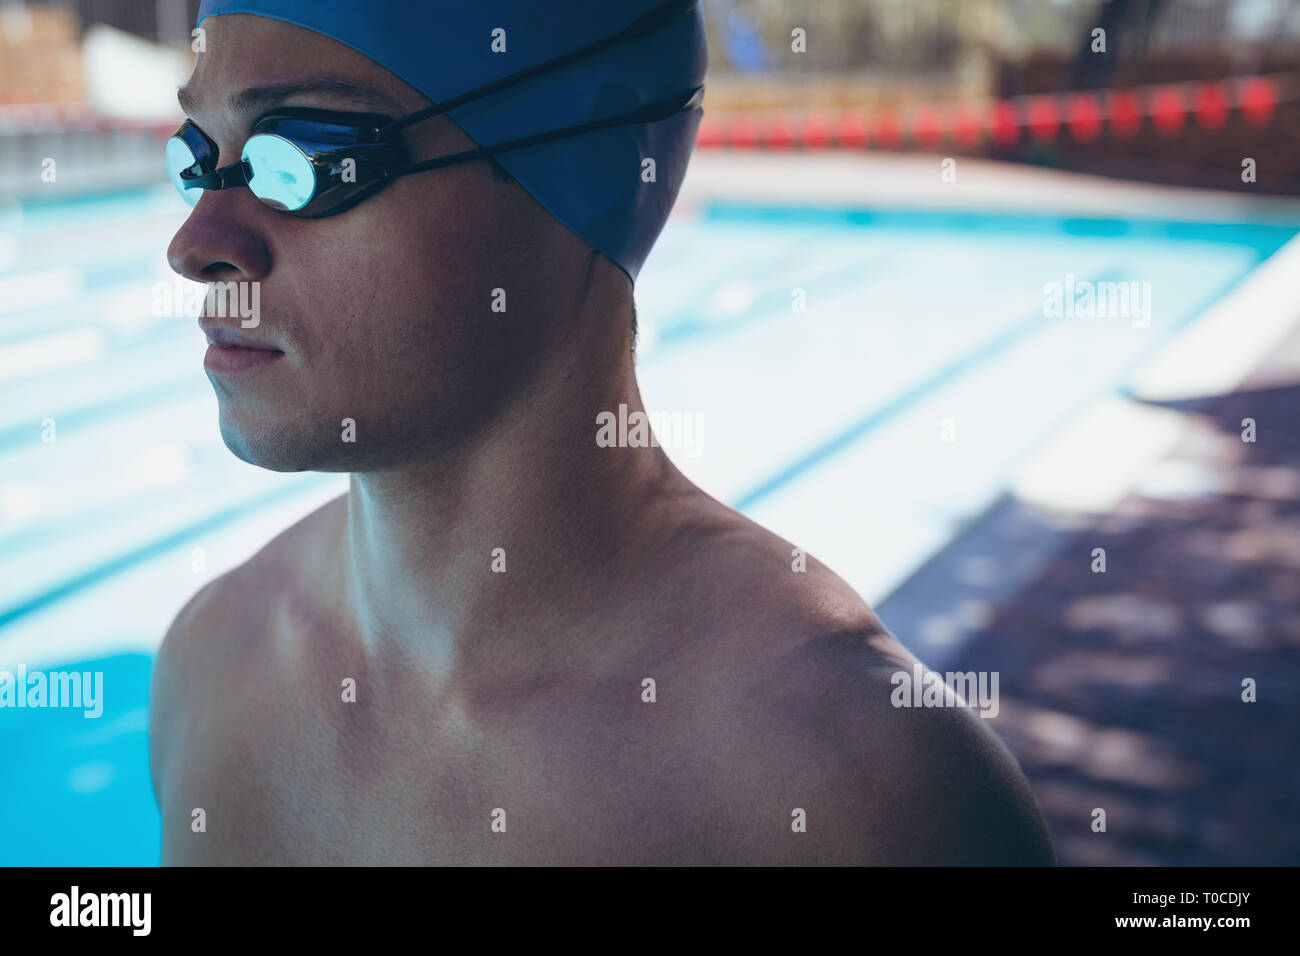 Jeune homme de race blanche avec des lunettes de natation nageur Banque D'Images